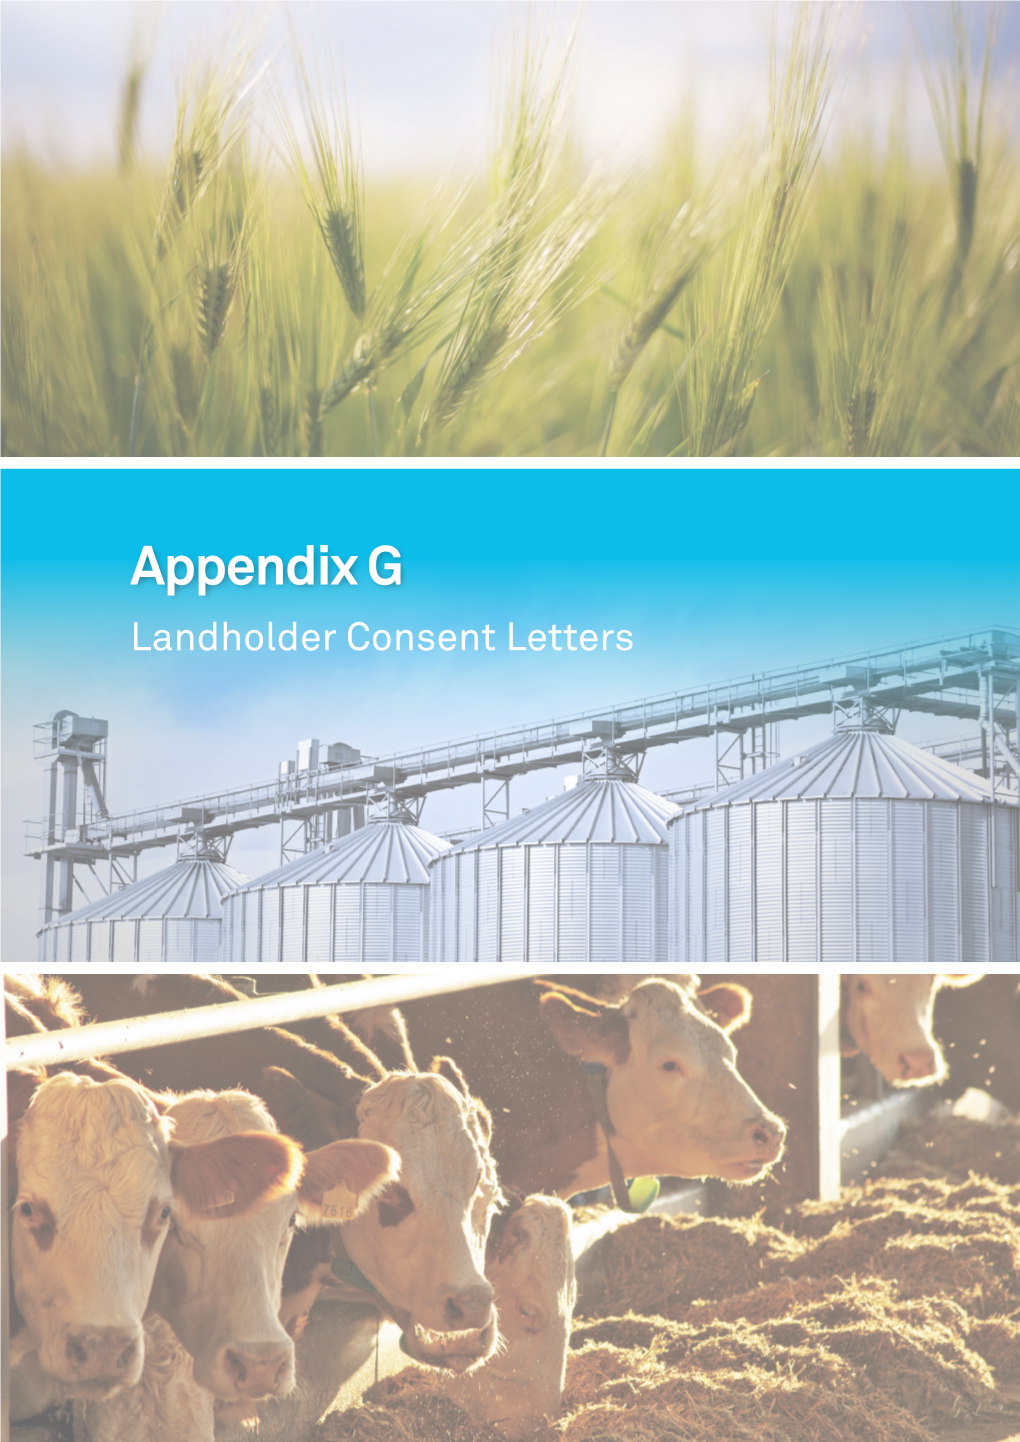 Appendix G Landholder Consent Letters